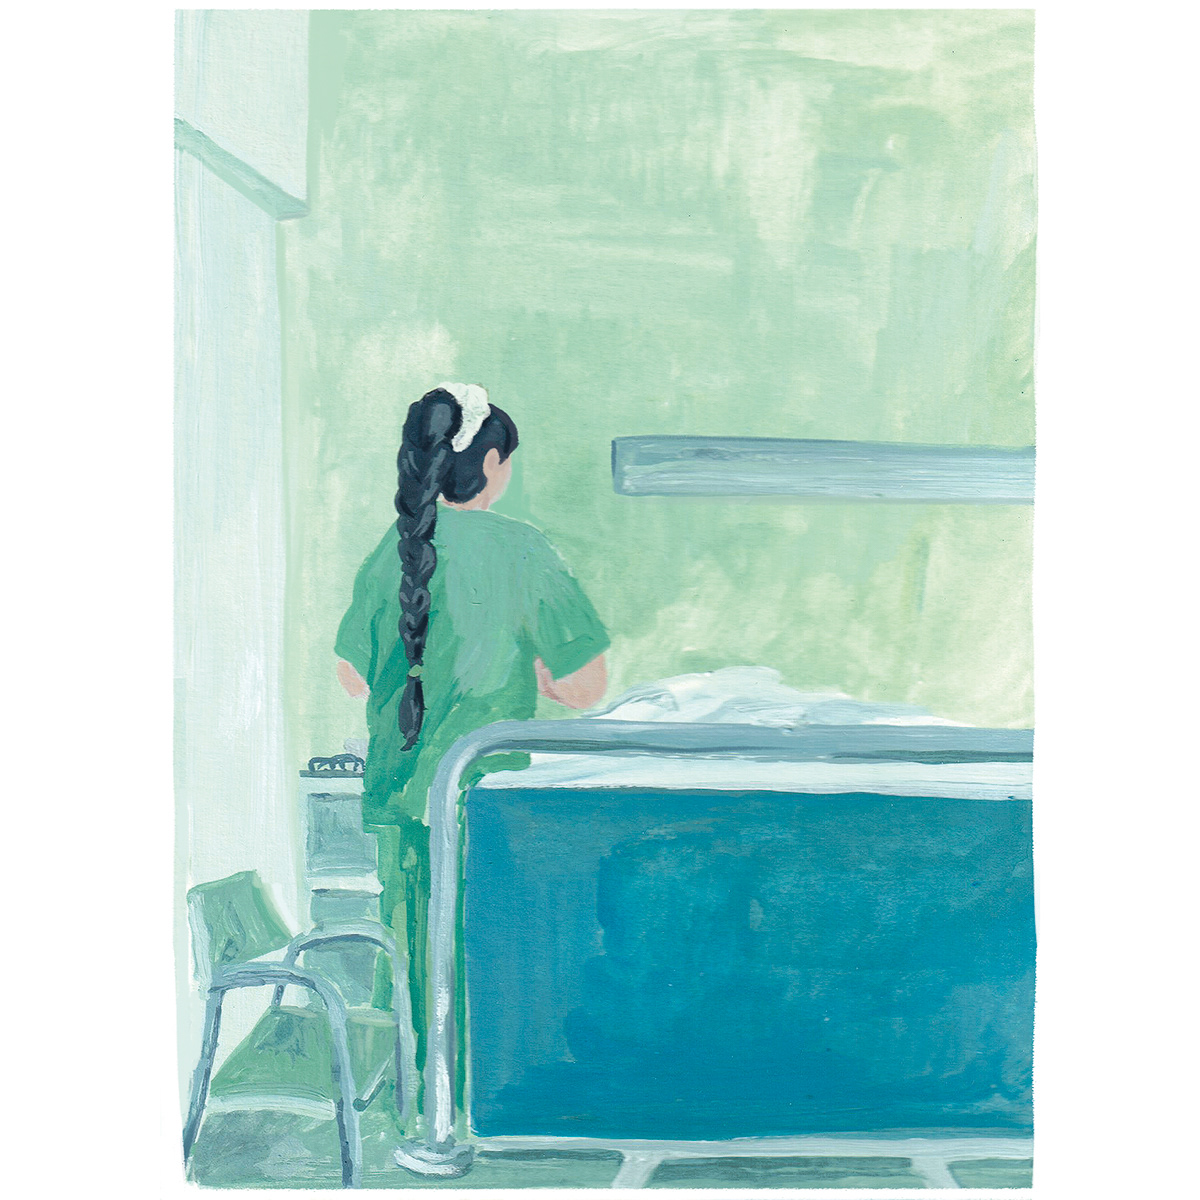 Autoedición editorial fanzine green hospital ILLUSTRATION  ilustracion publishing  